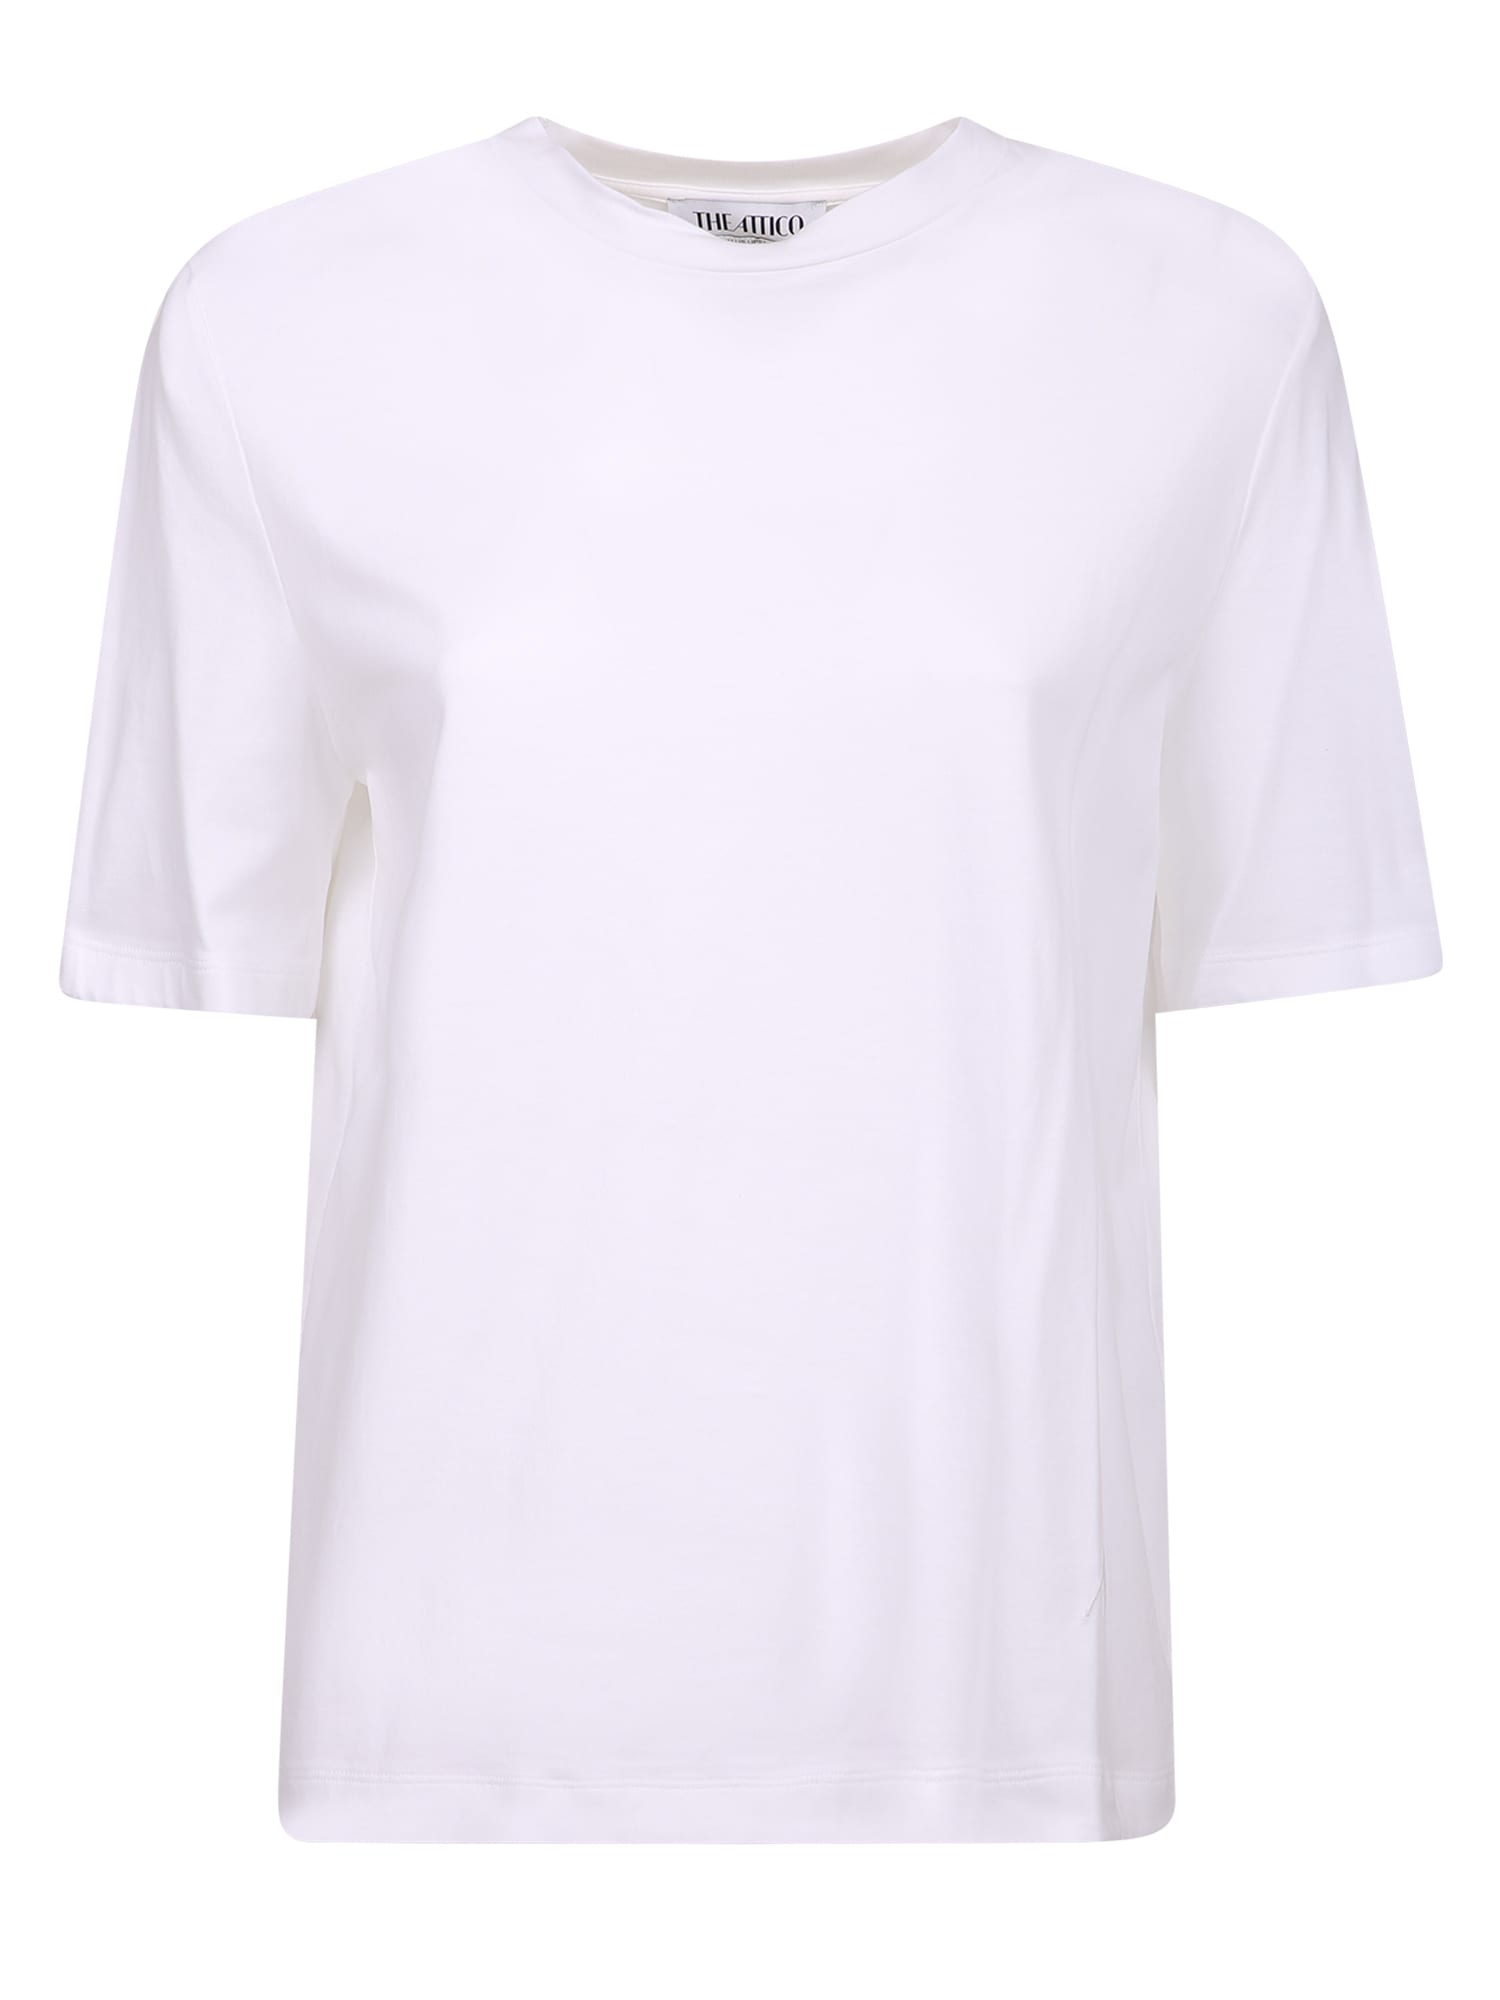 The Attico Cotton T-shirt